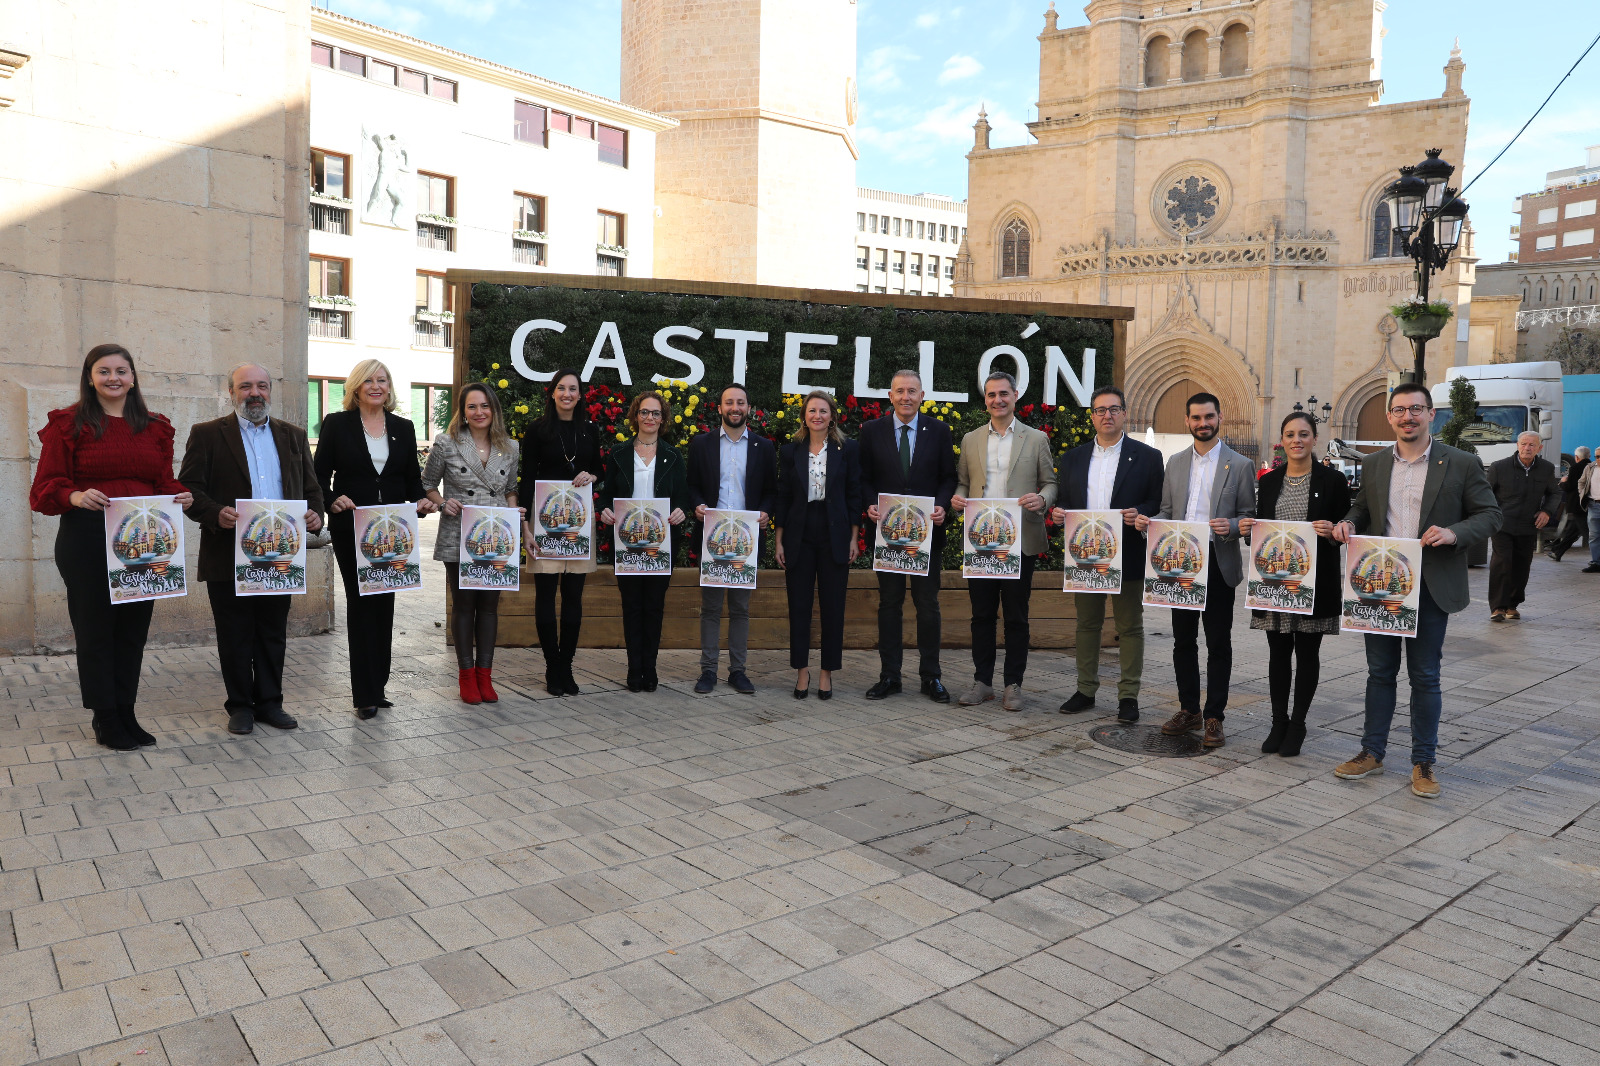 Begoña Carrasco: “Castellón tendrá una Navidad mágica con más de 250 actividades que iluminará todos los barrios y distritos de la ciudad”